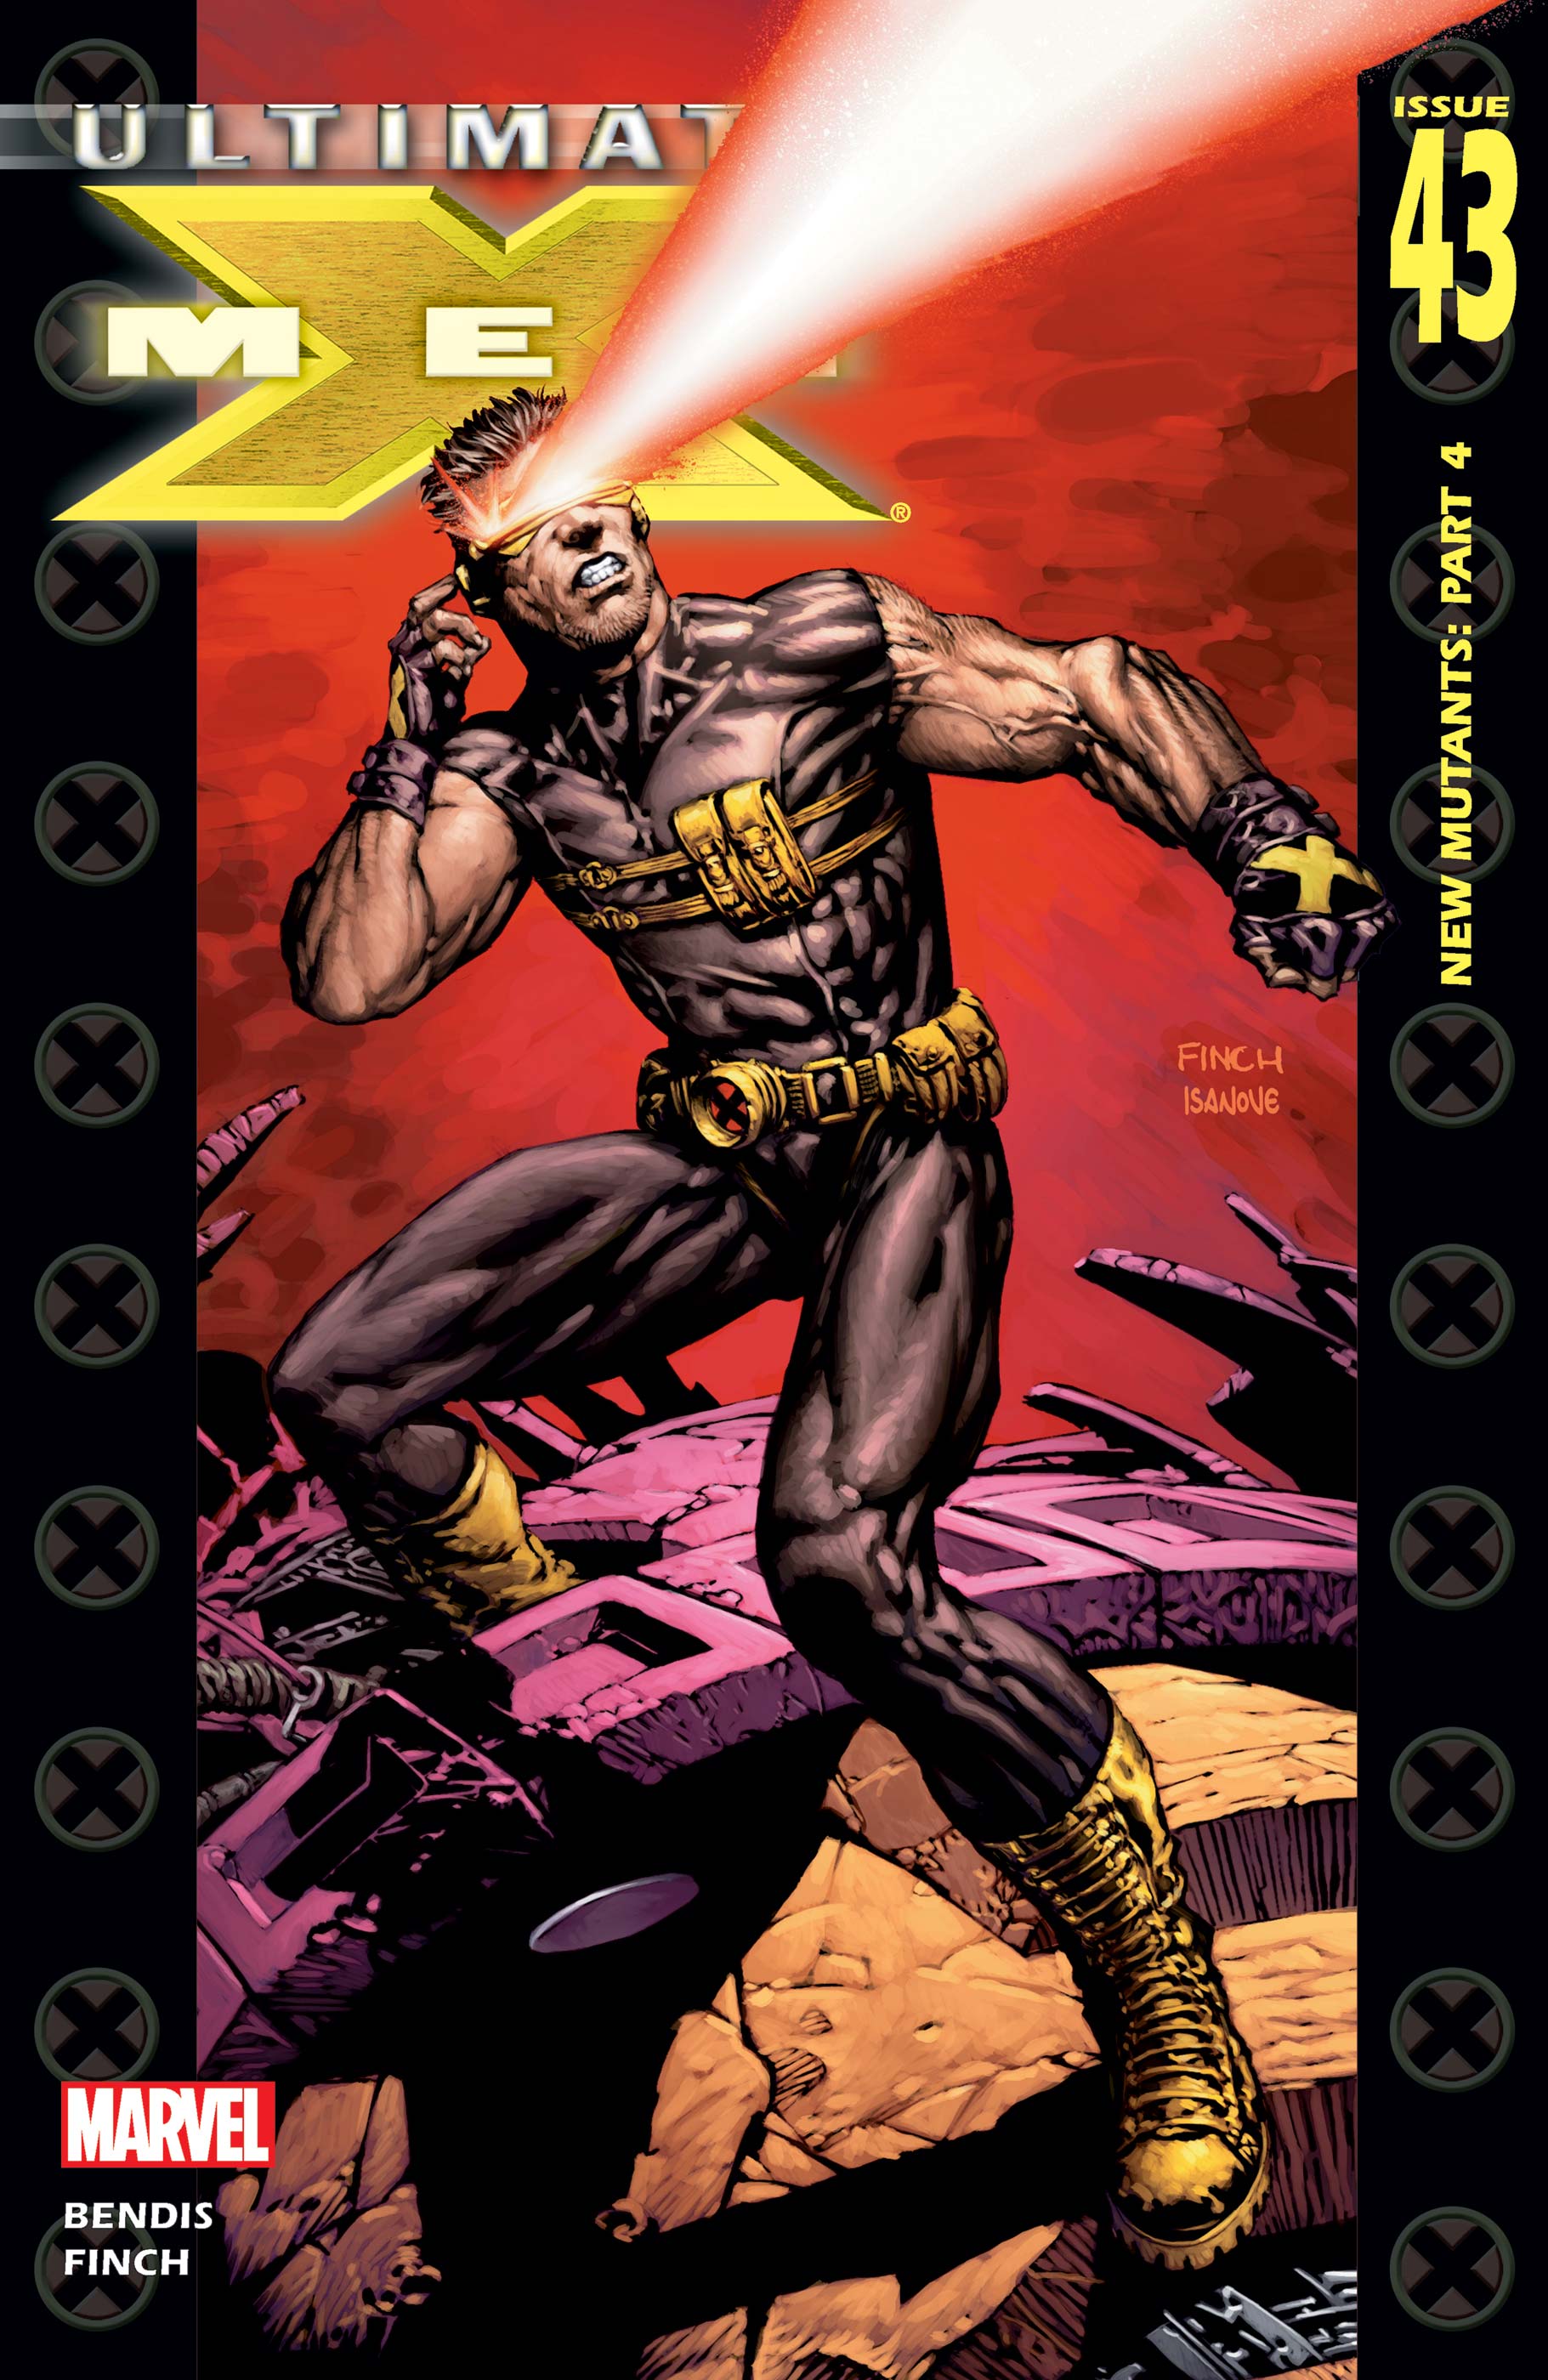 Ultimate X-Men (2001) #43